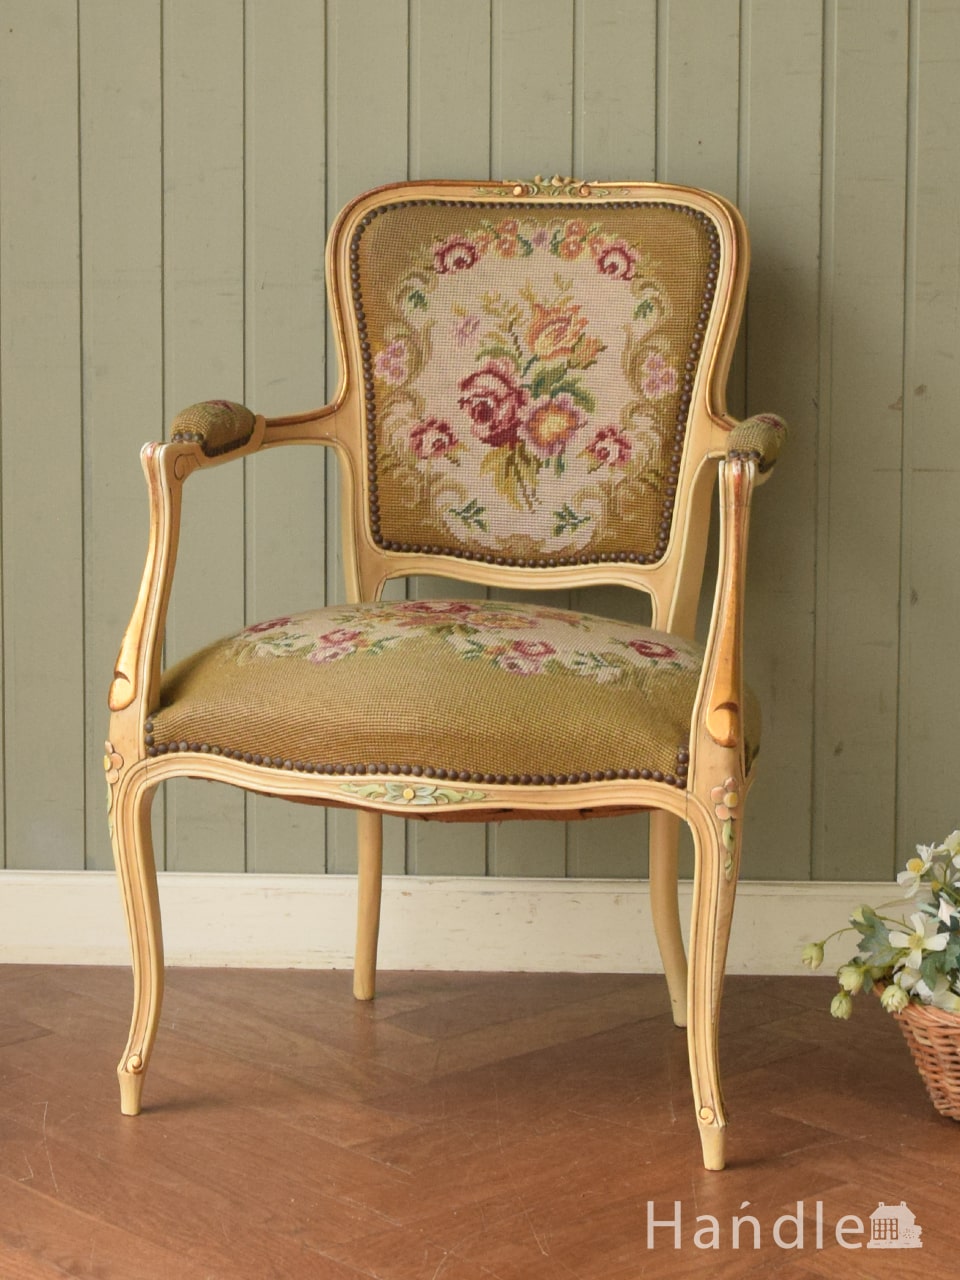 マリーアントワネットが愛したフランス生まれの椅子、サロンセットになるプチポワンアームチェア (j-735-c)